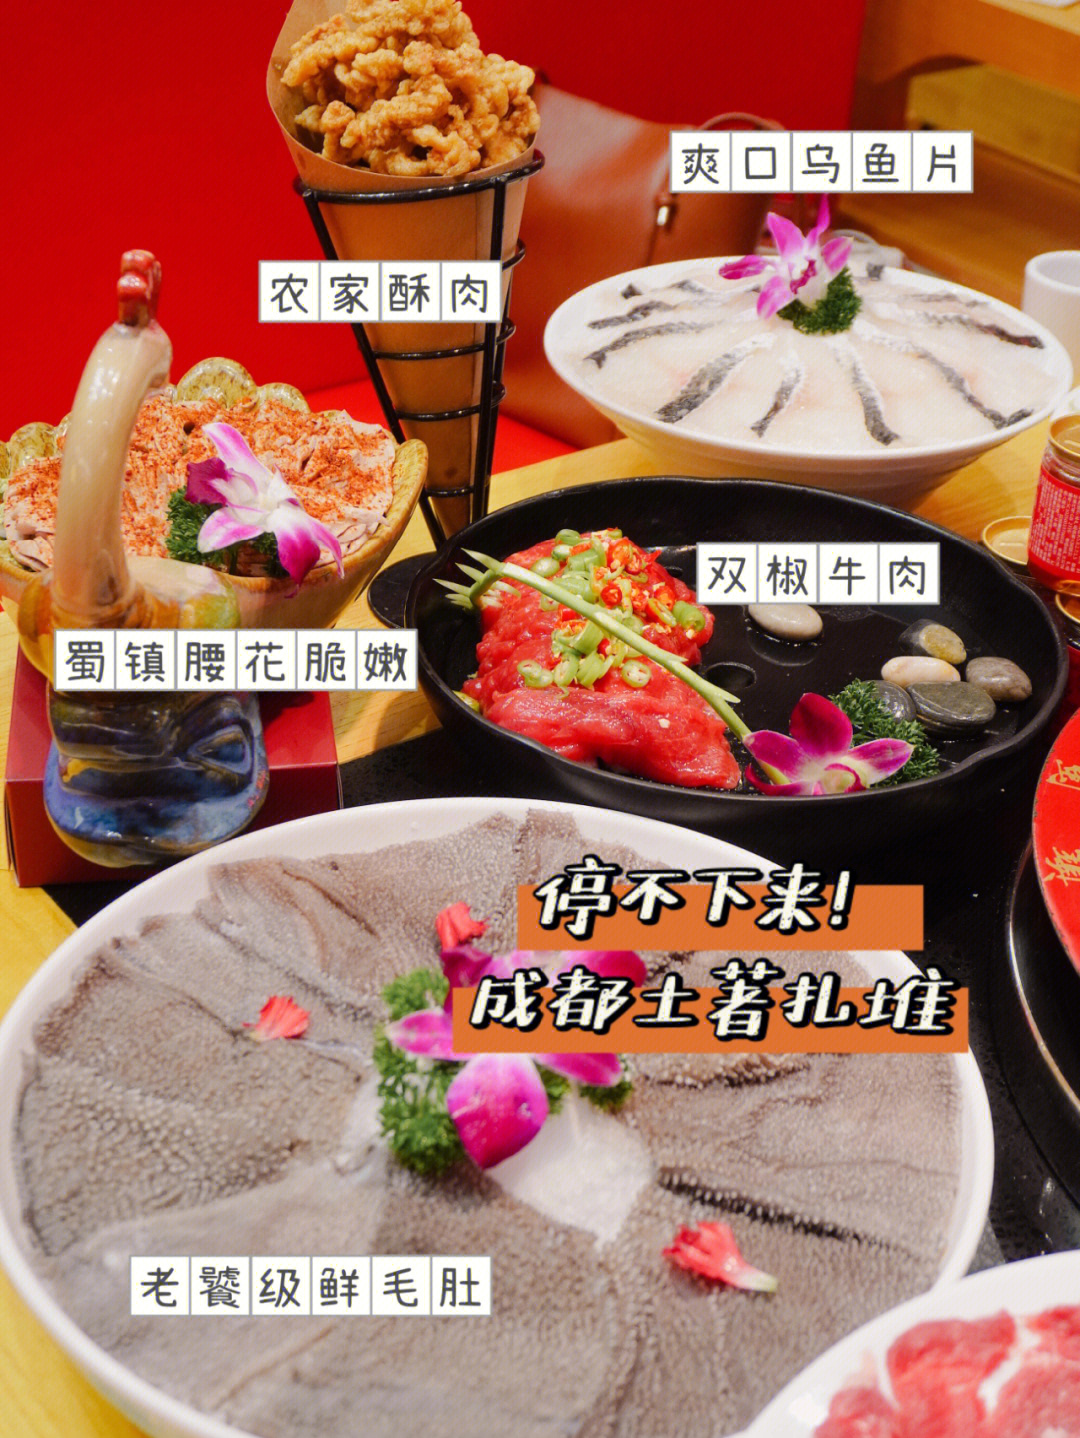 每年吃火锅必光顾必打卡的店就是蜀镇鲜货火锅很多年下来它还能保证着